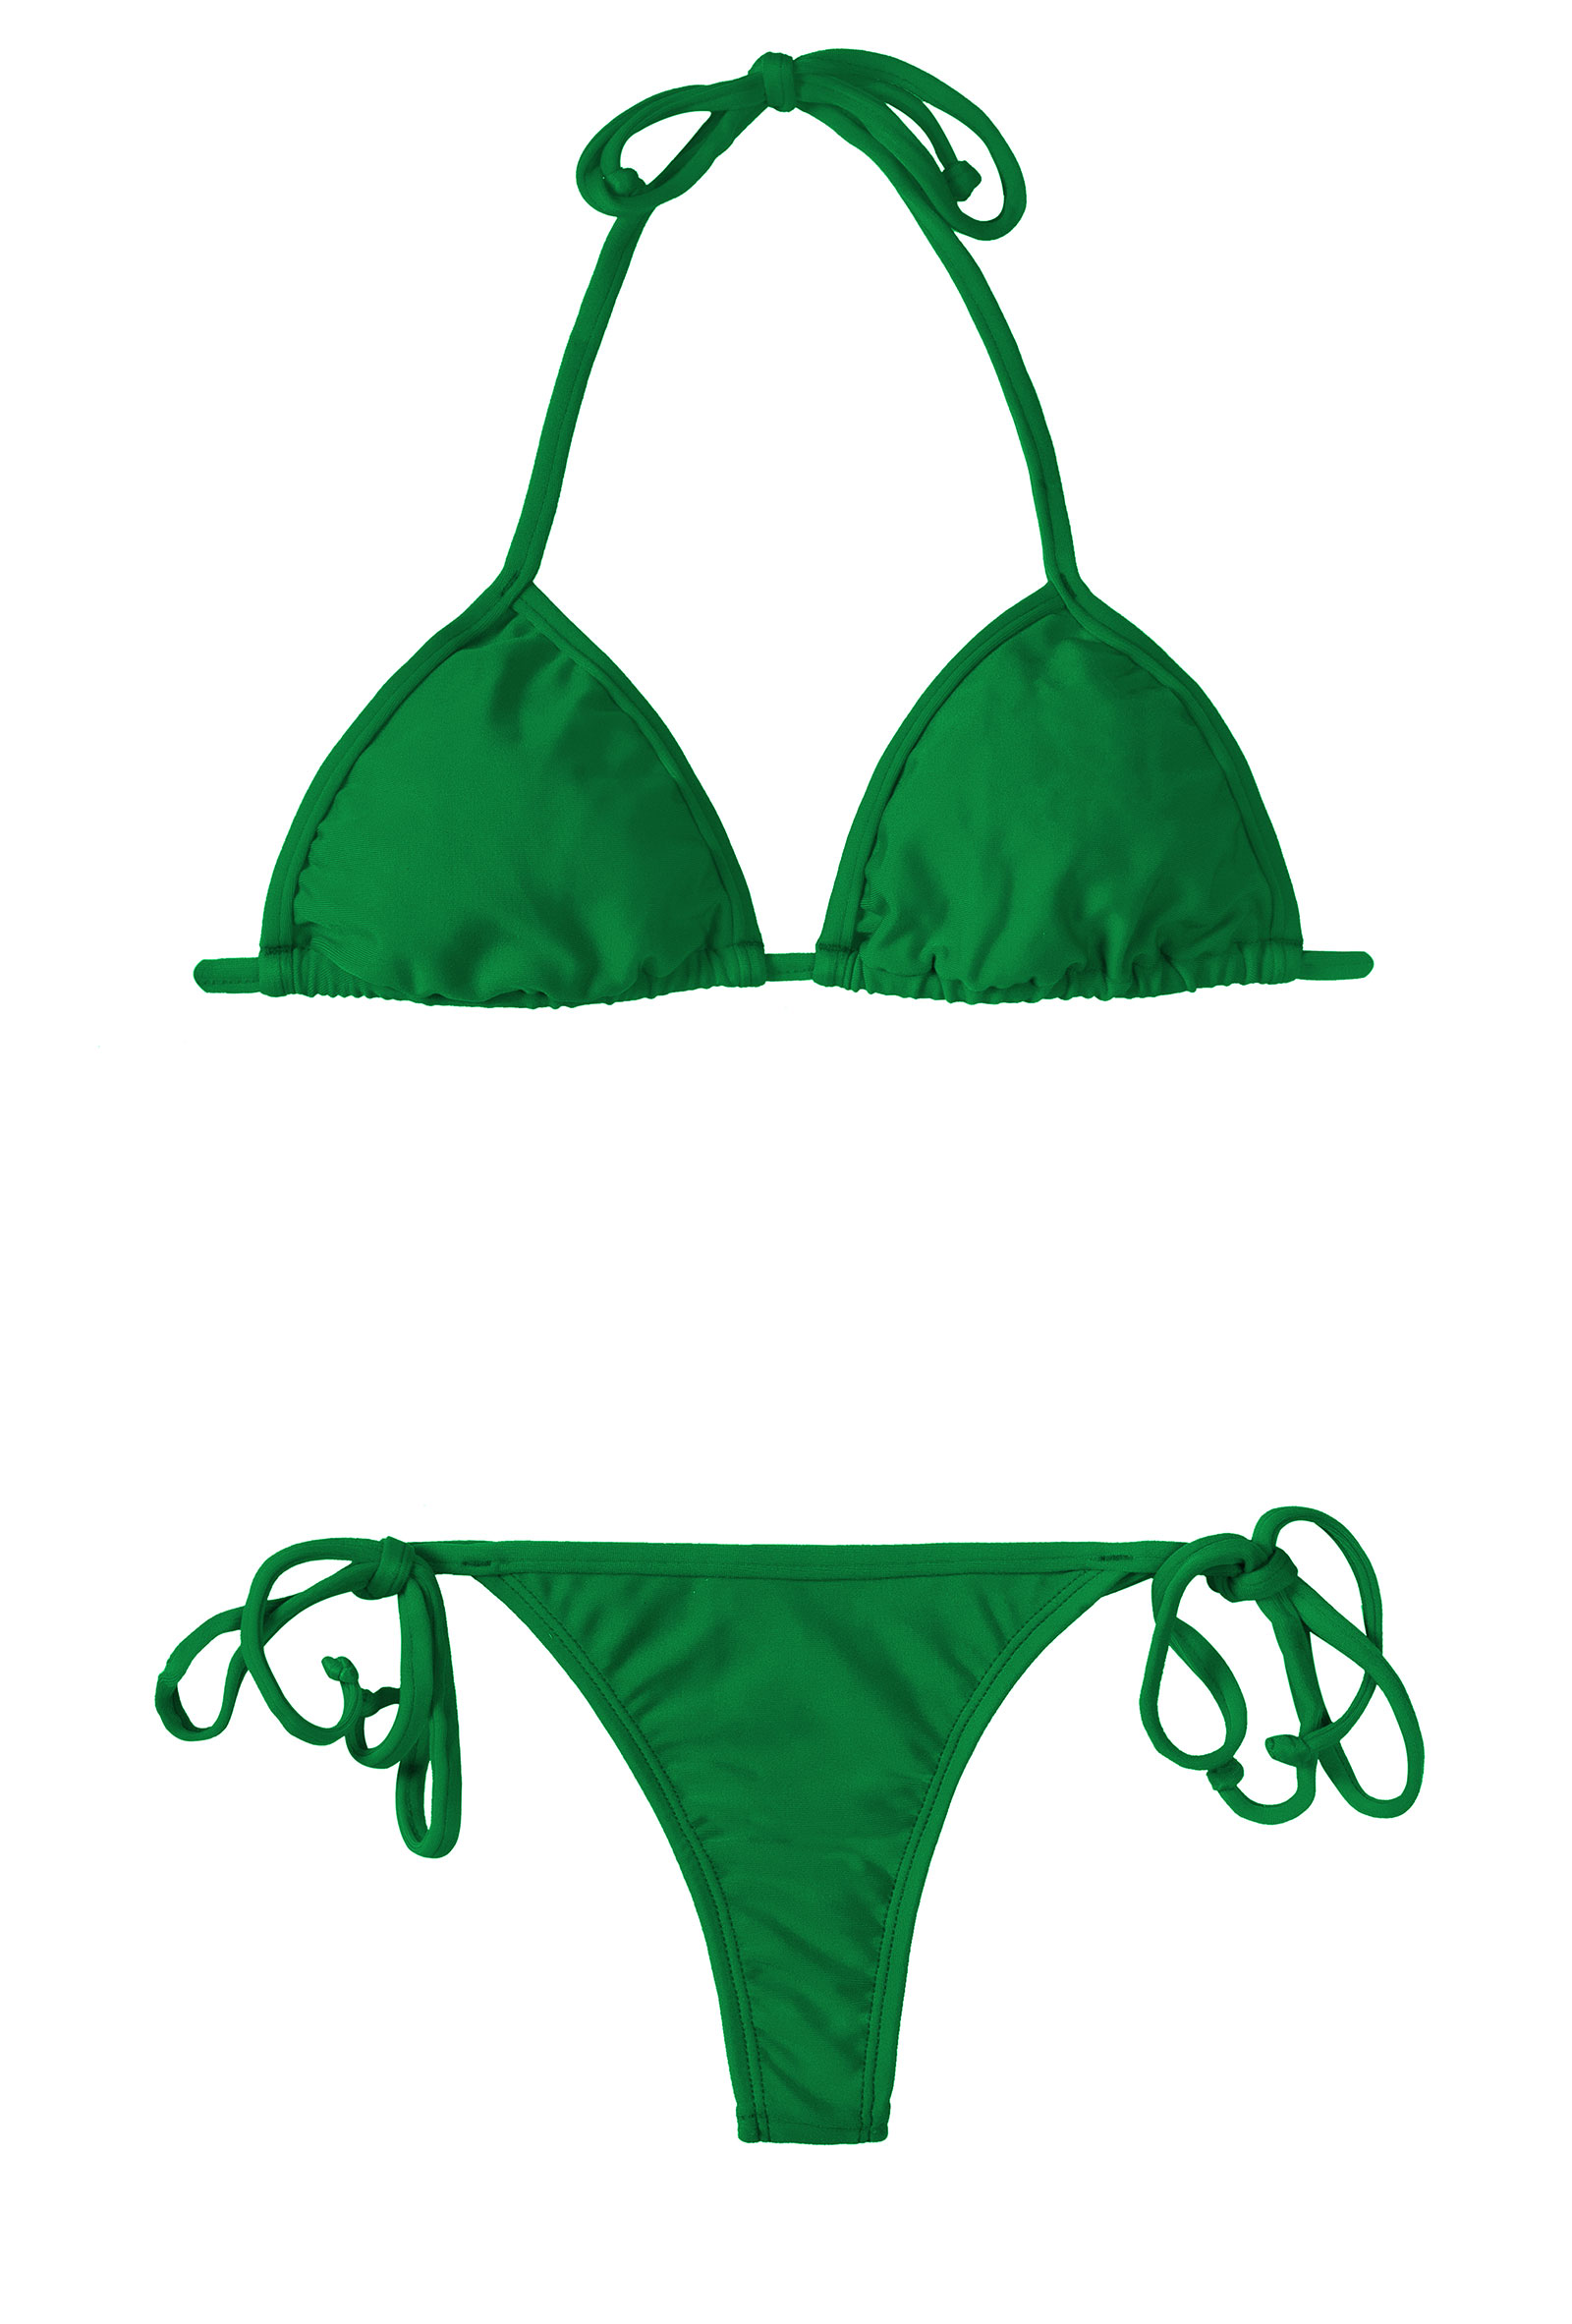 Green String Bikini And Sliding Triangle Top - Peterpan Cort Micro